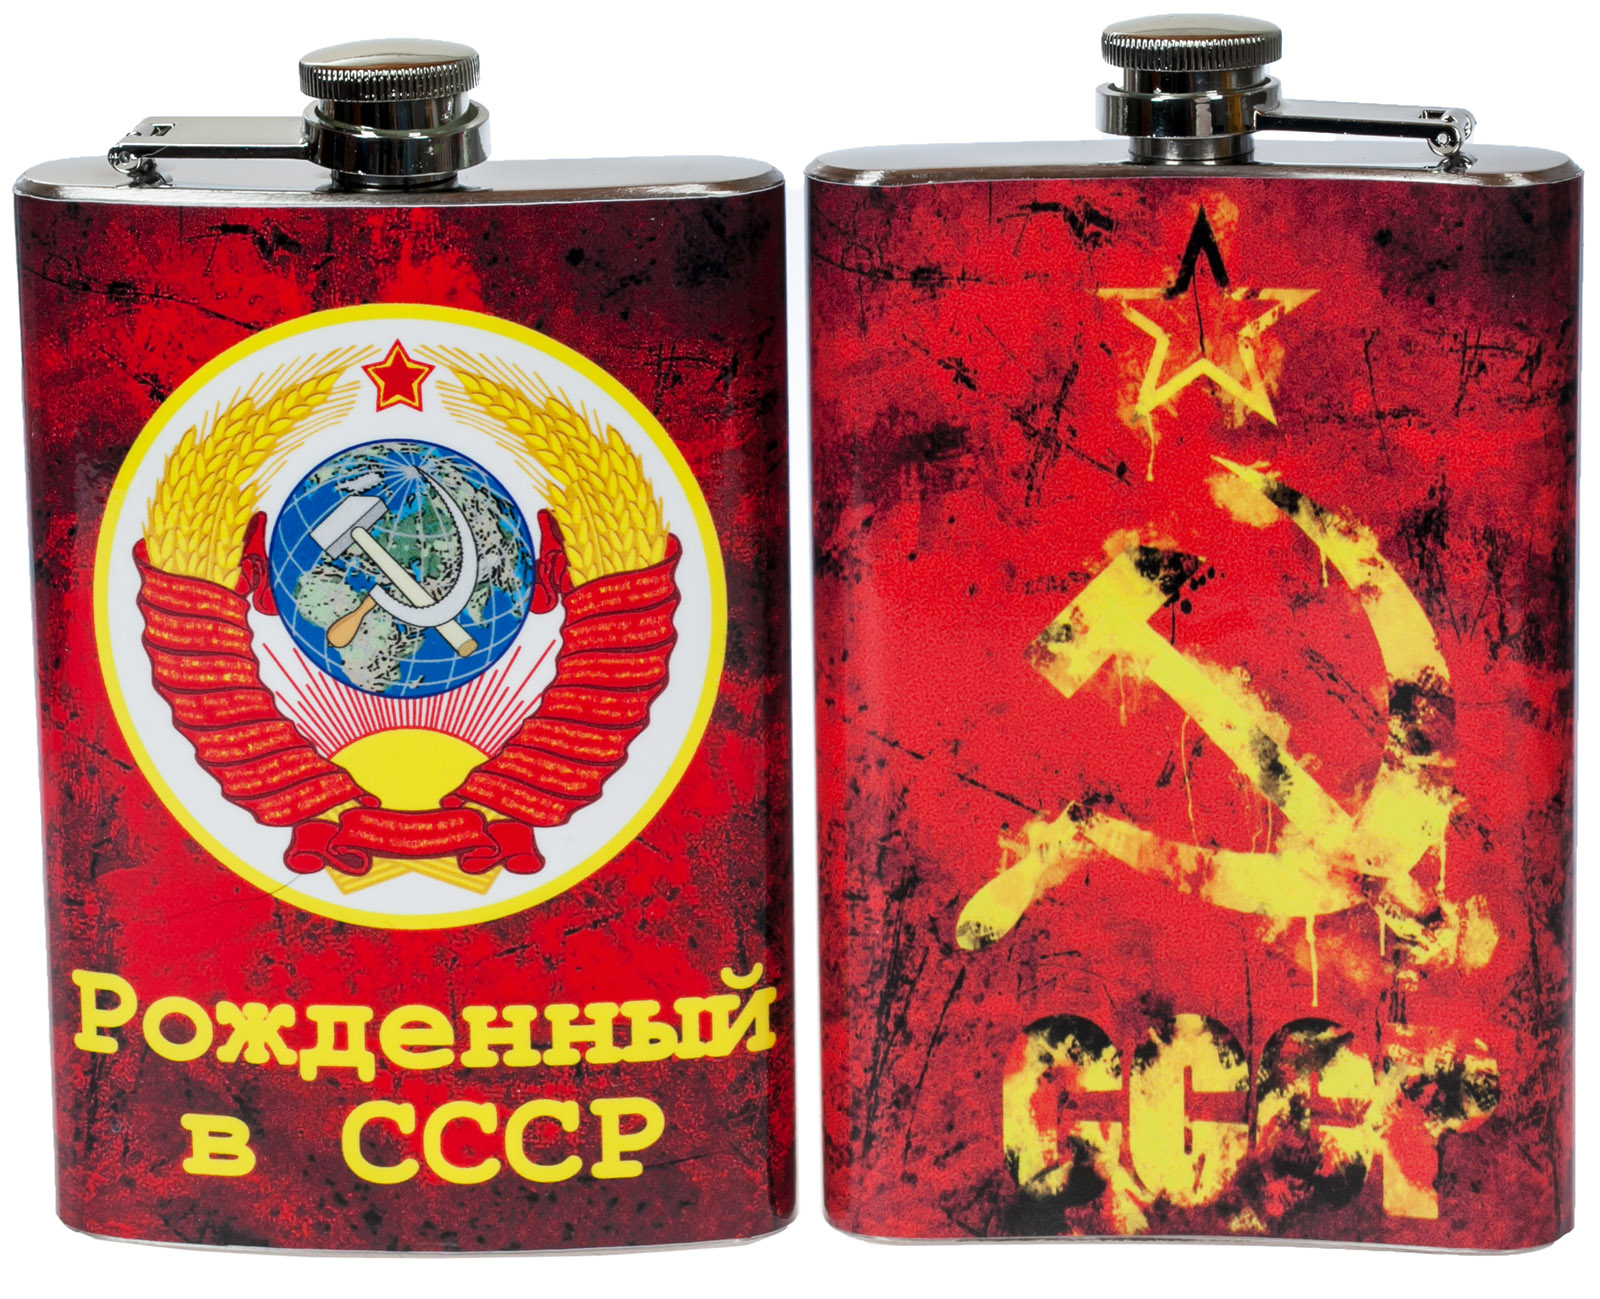 Купить фляжку "Рожденный в СССР" по приятной цене